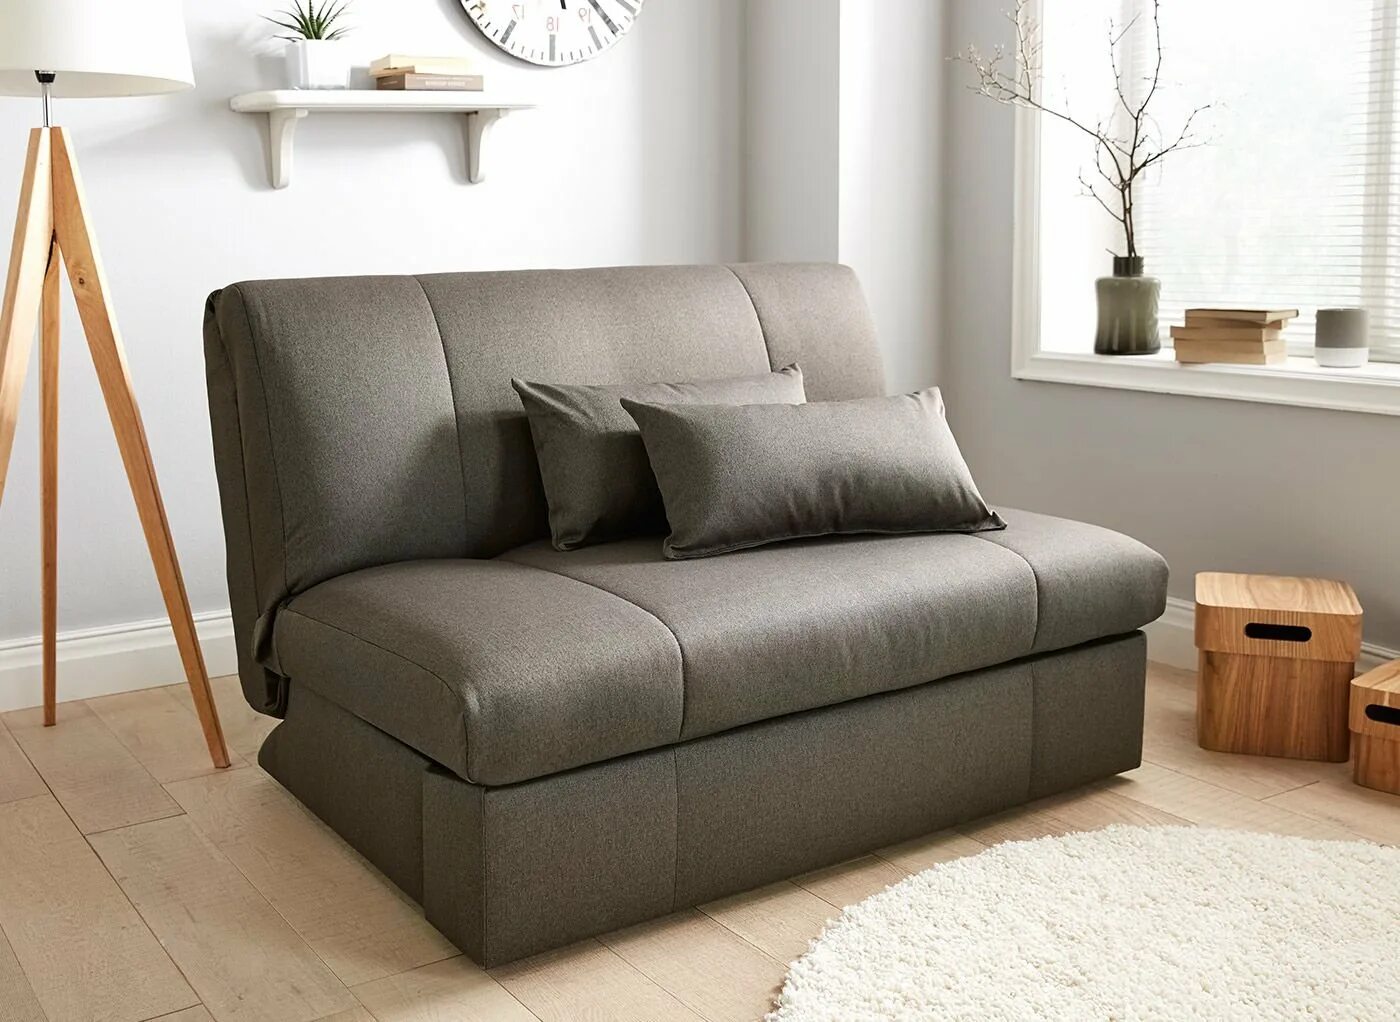 Раскладные диваны кровати купить. Раскладной диван Sofa Bed серого цвета IMR-613087. Диван Sofa Bed. Диваны раскладные маленькие Hoff.